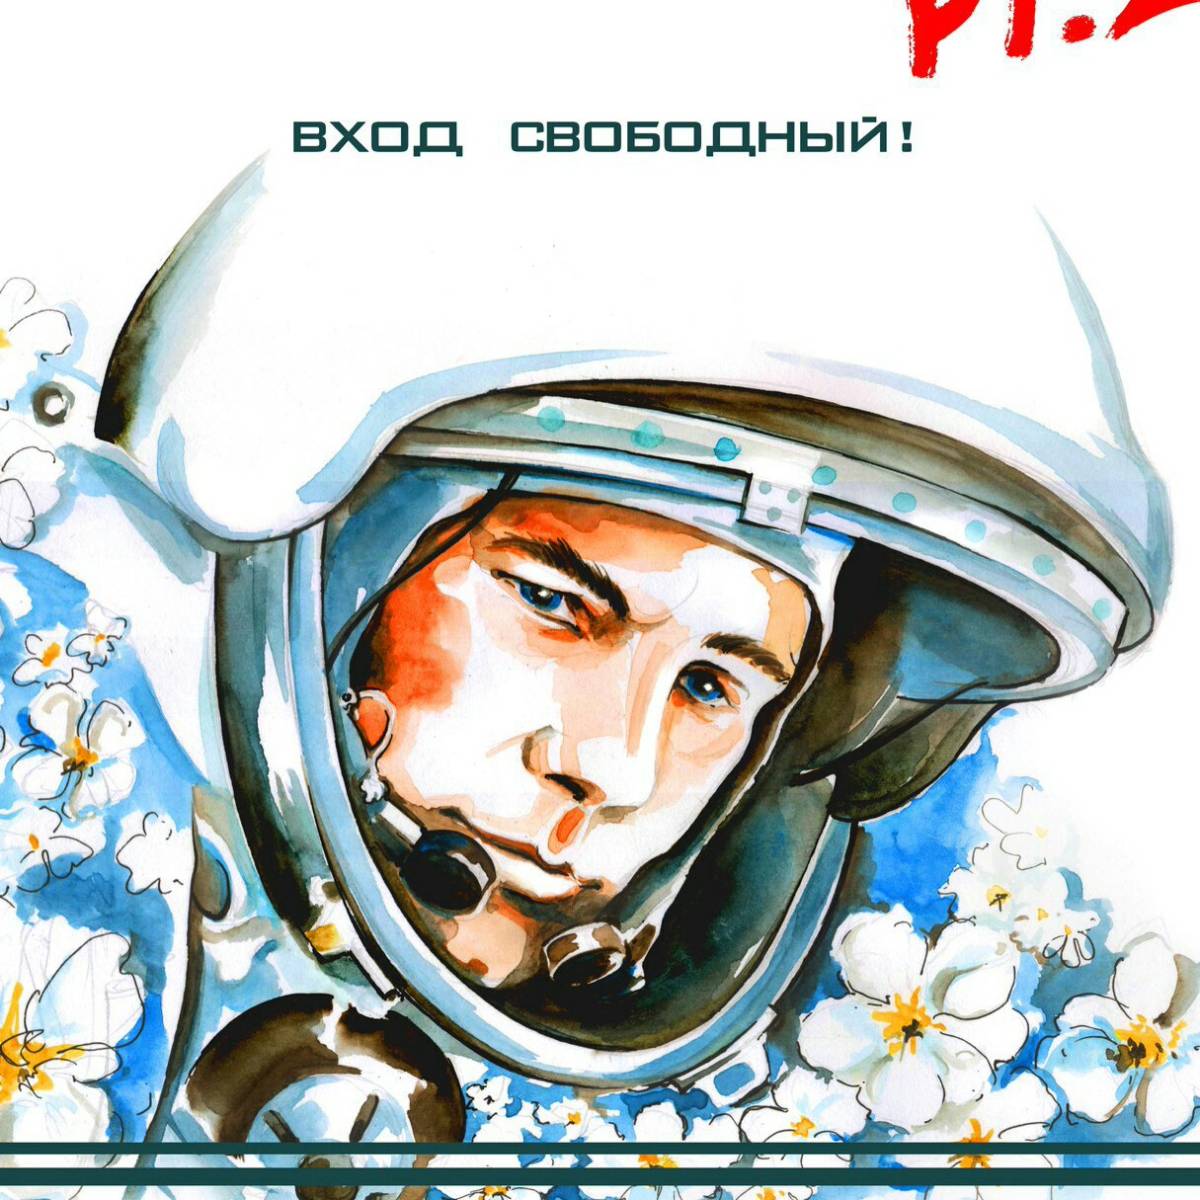 Главные символы дня космонавтики. Гагарин космонавт. Звездный сын земли Гагарин.